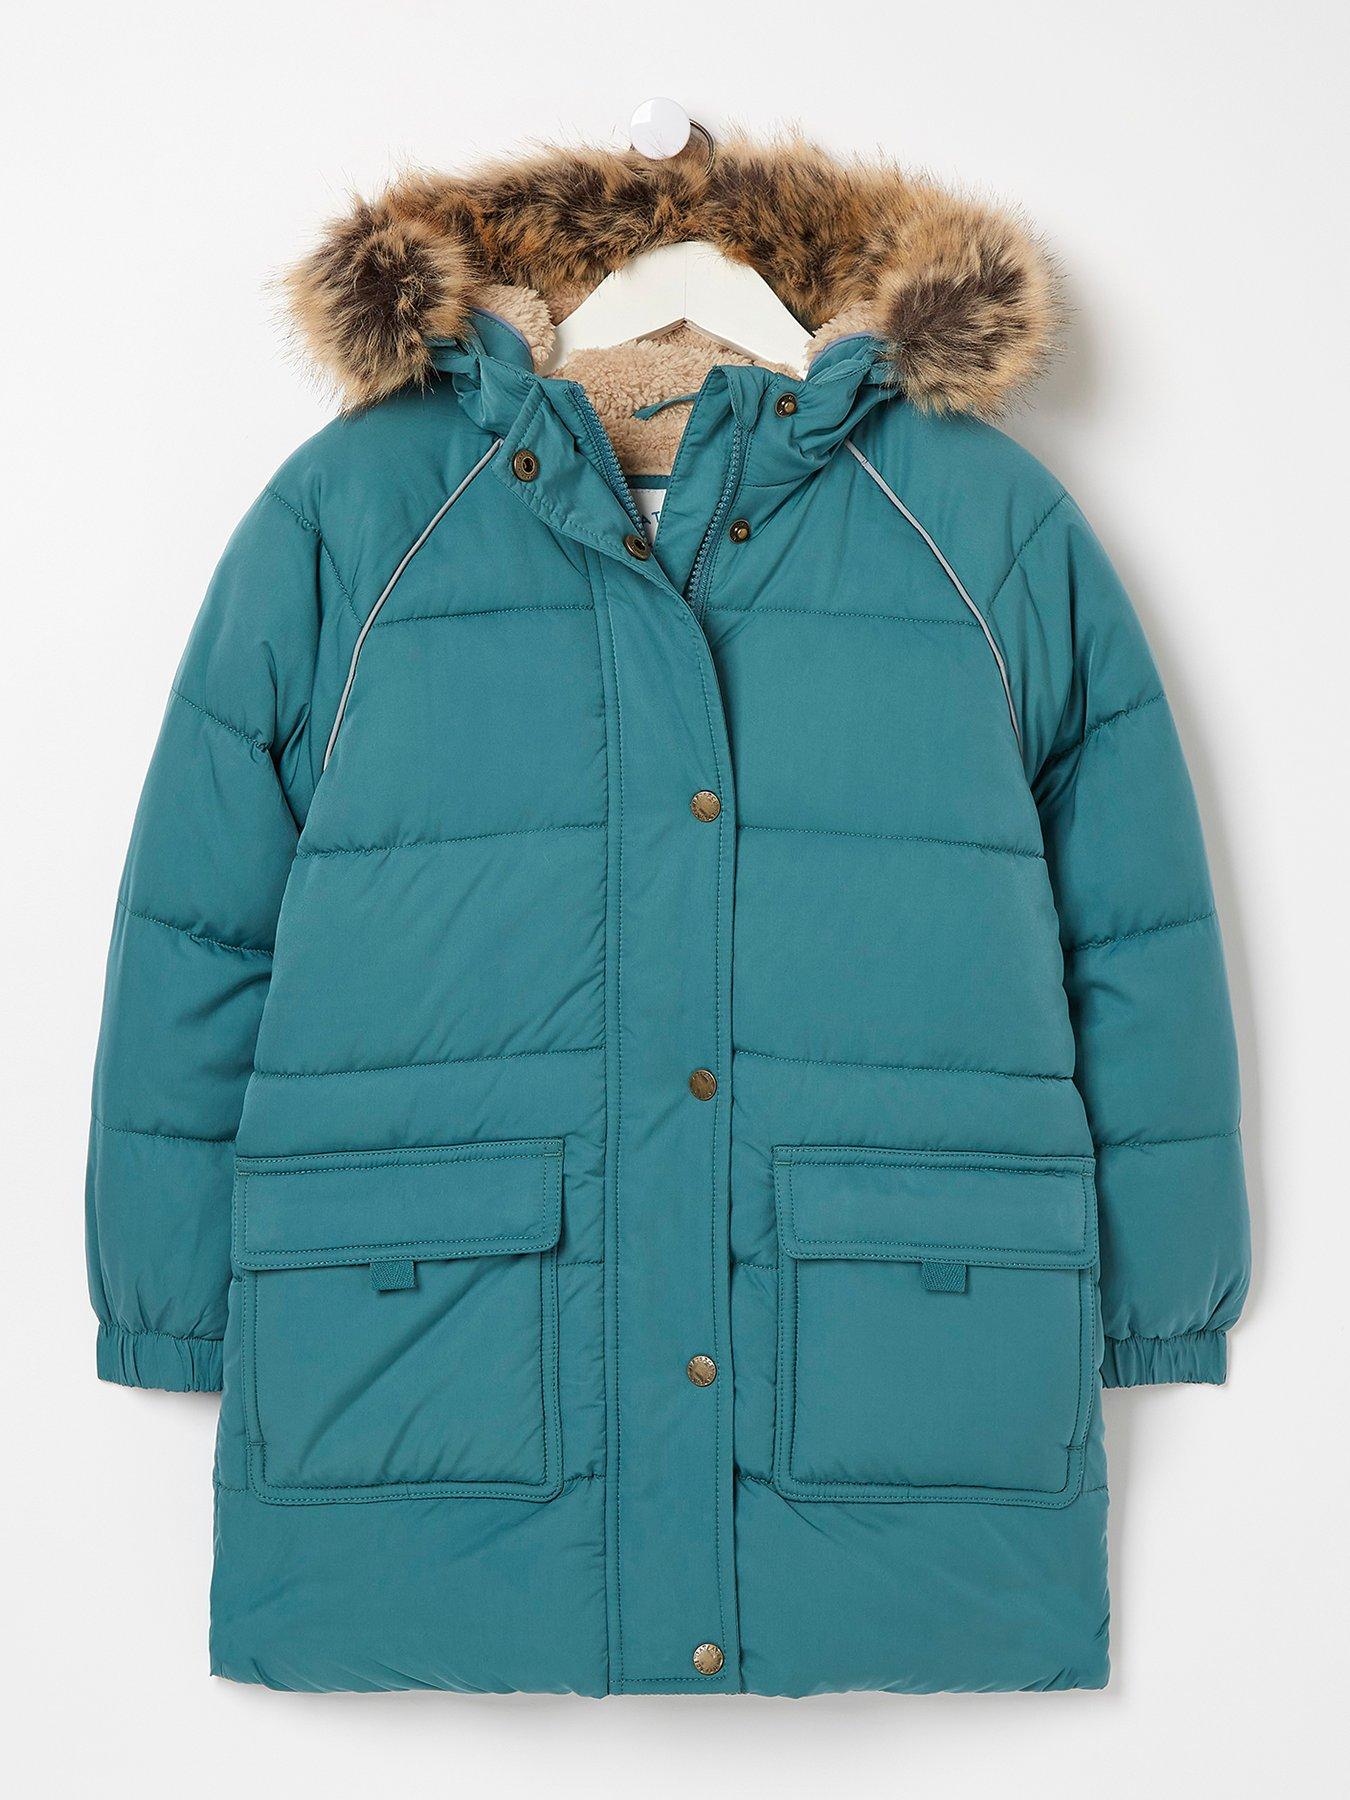 Kids Jacket DESIGNER'S Navy Parka Coat Faux Fur Hooded Top Christmas Gift 3-13 